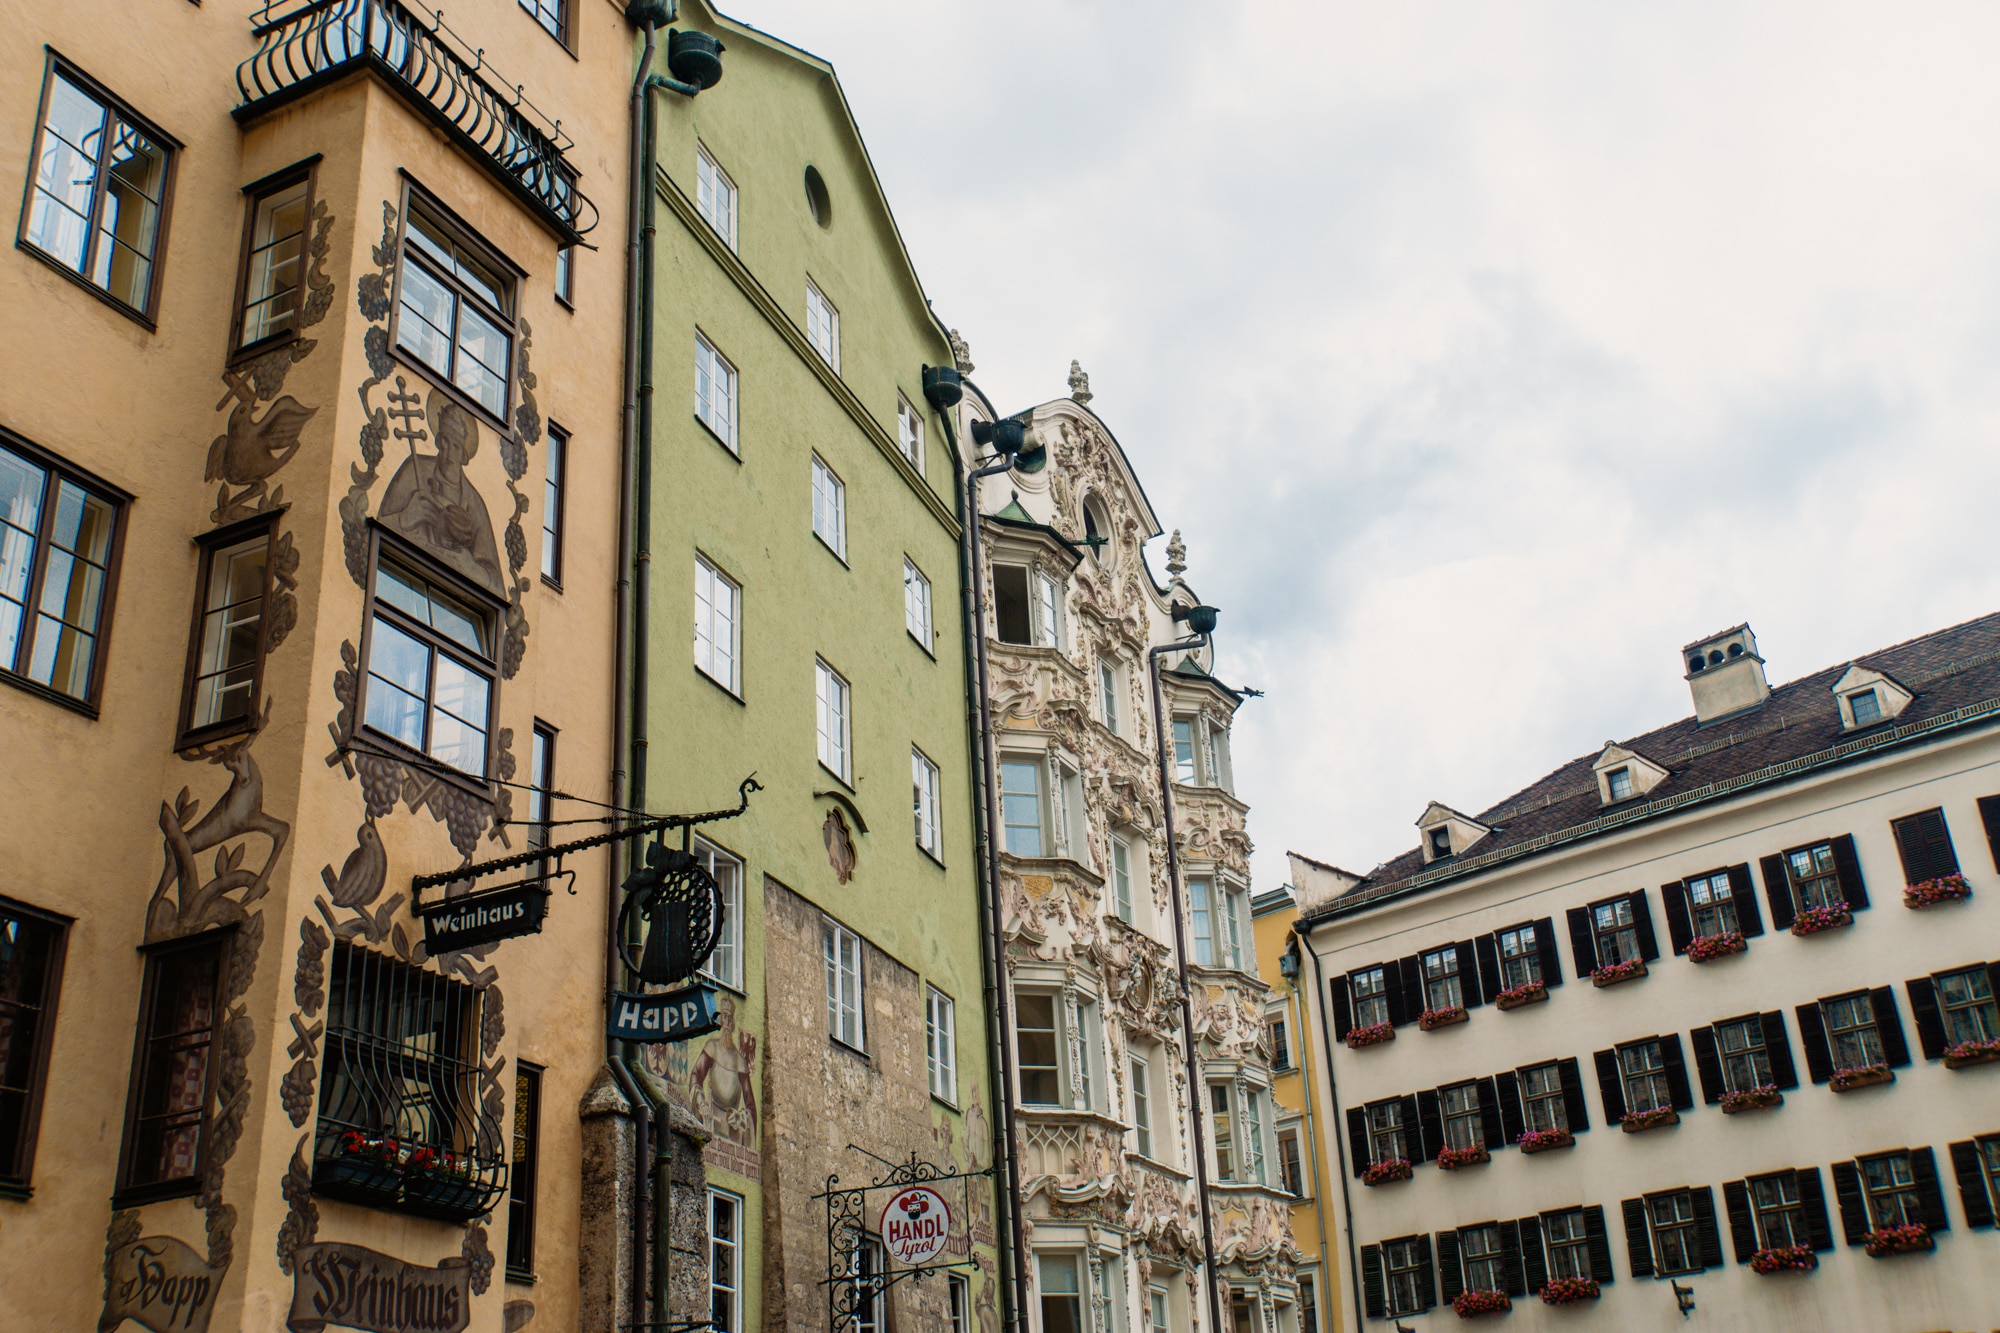 Innsbruck Sehenswürdigkeiten: Top Ten Highlights und Tipps für die Stadt - Altstadt